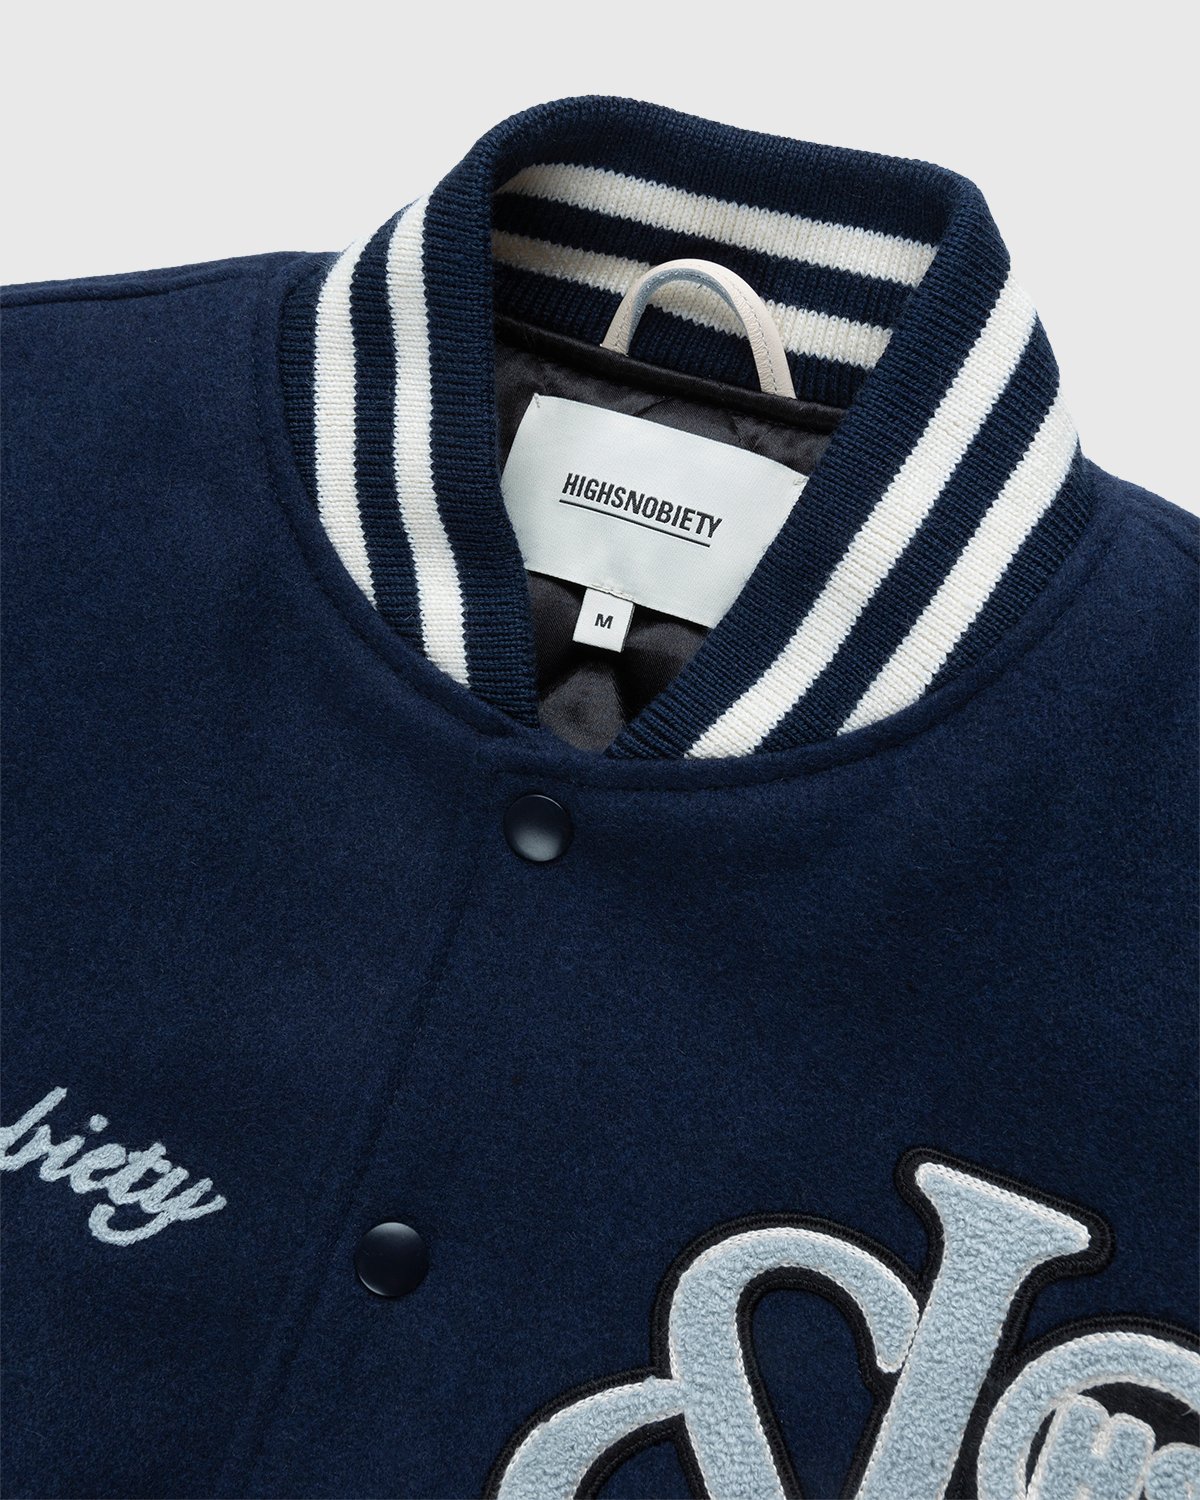 Jacob & Co. x Highsnobiety - Logo Varsity Jacket Navy Creme - Clothing - Blue - Image 3